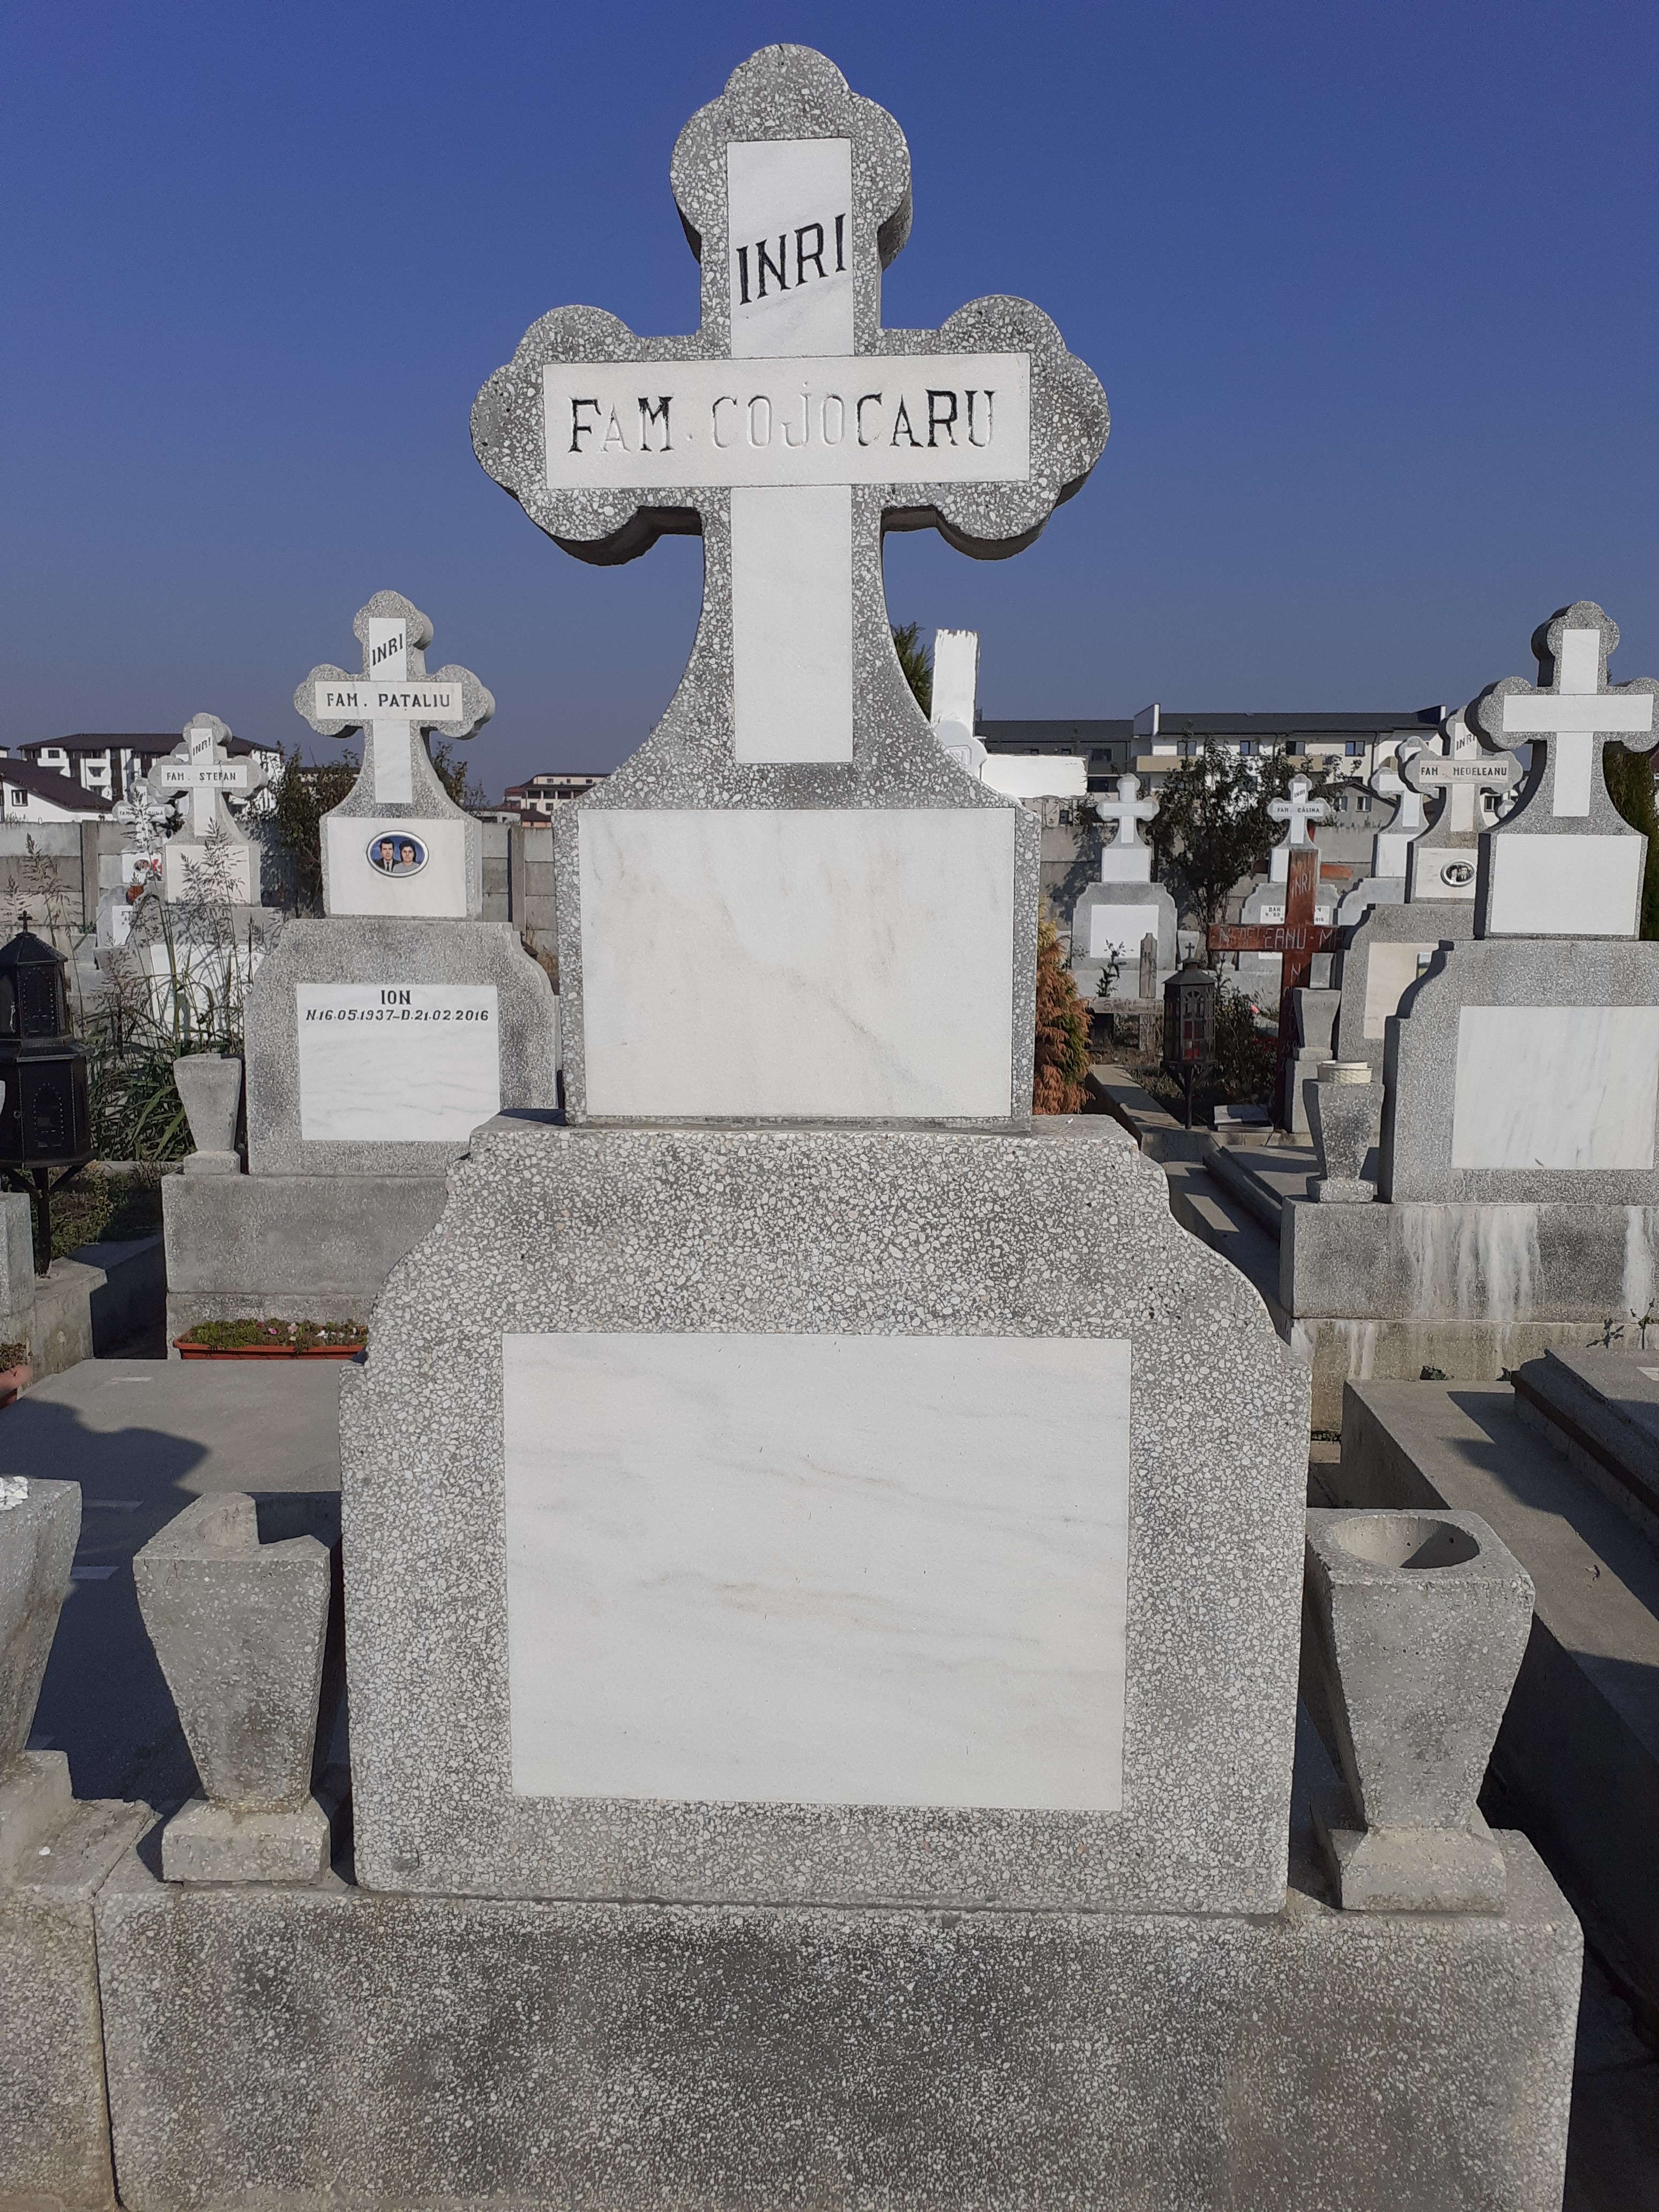 Cimitirul ODIHNĂ VEŞNIC